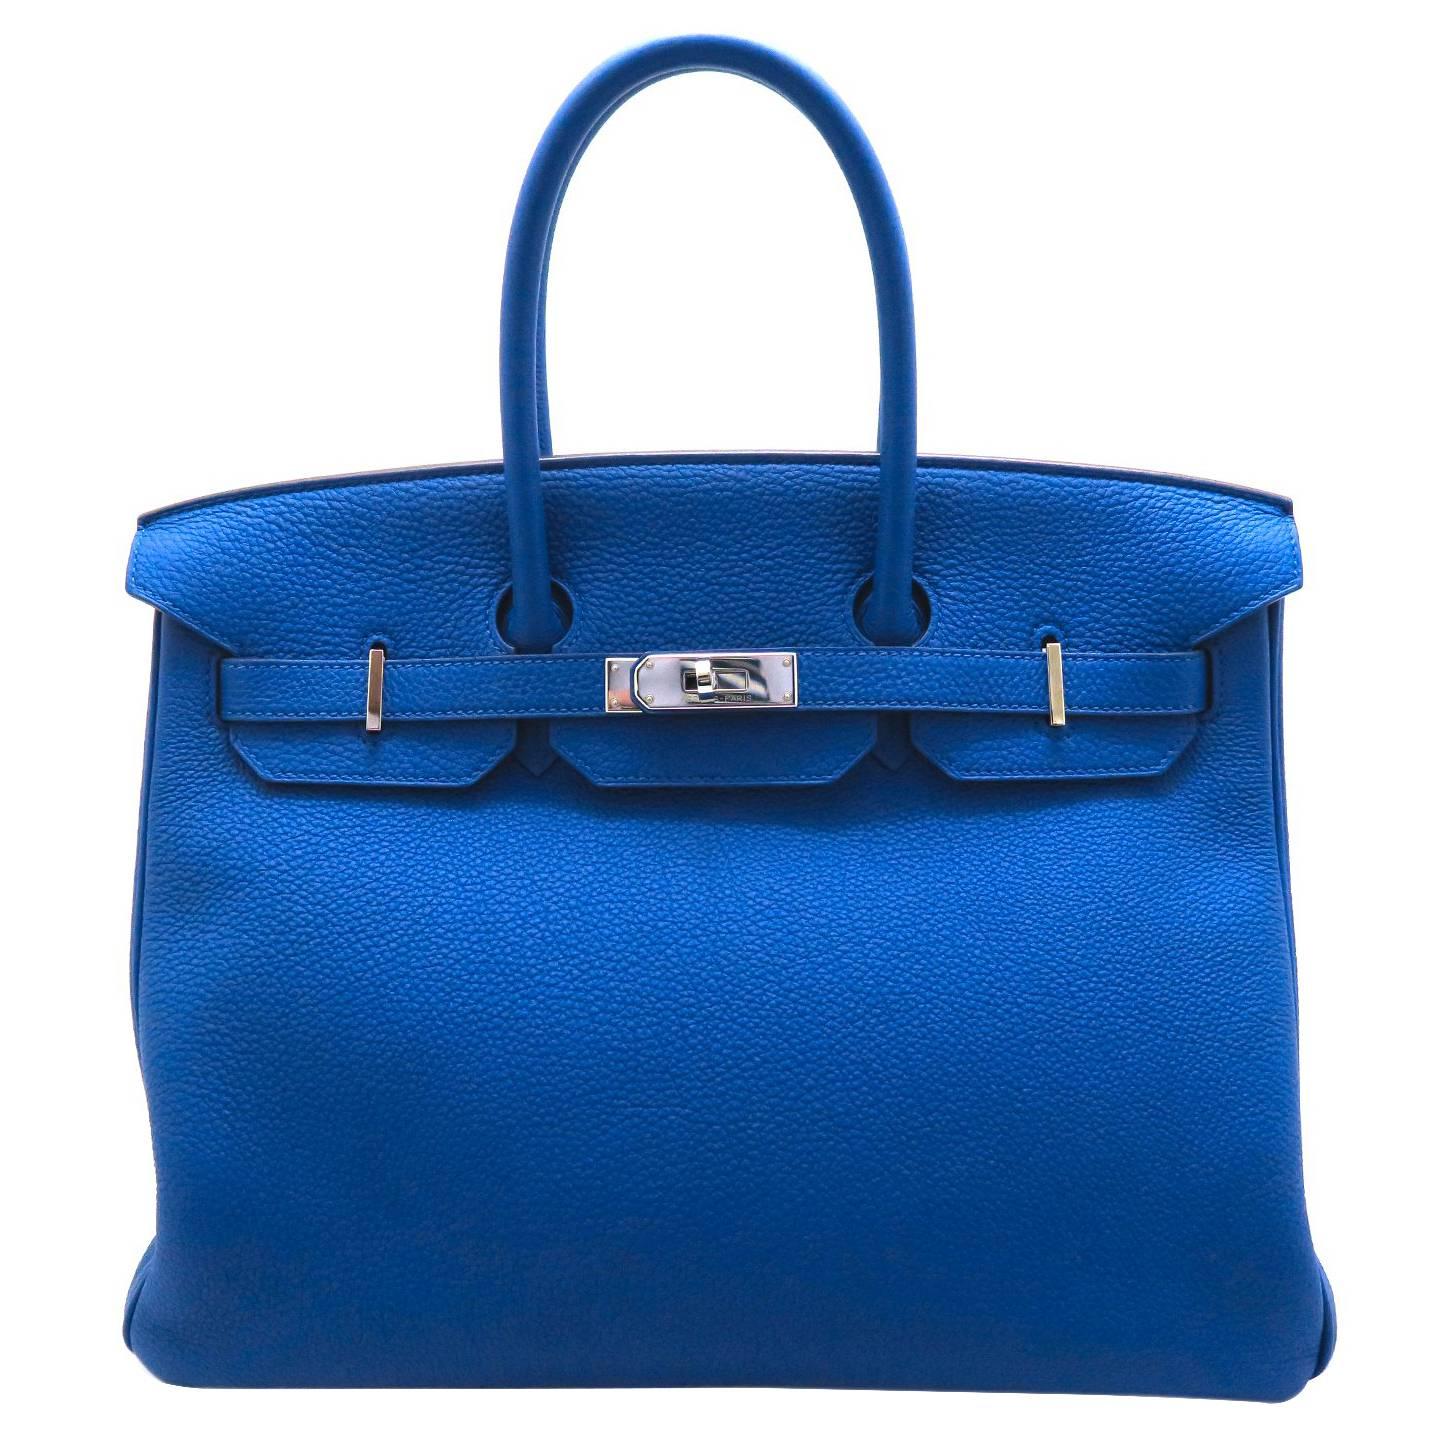 Hermes Birkin 35 Bleu Electric Togo Leather SHW Top Handle Bag